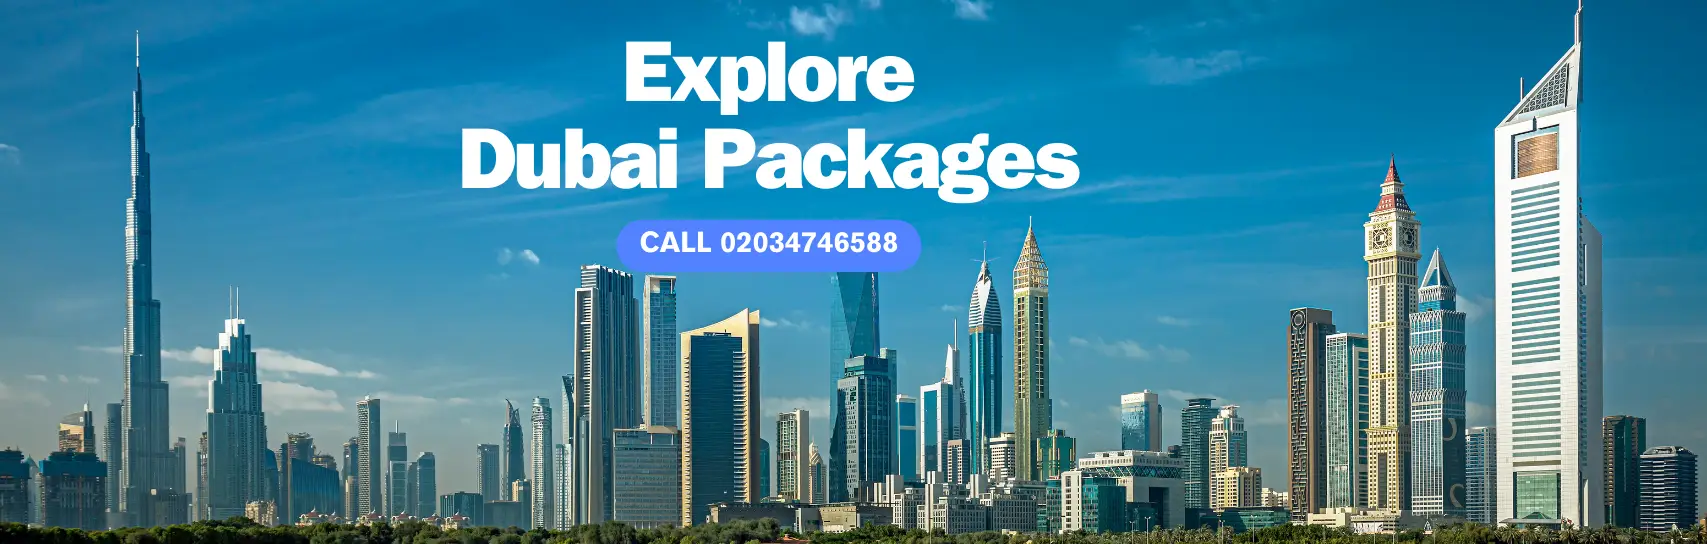 Explore Dubai Packages